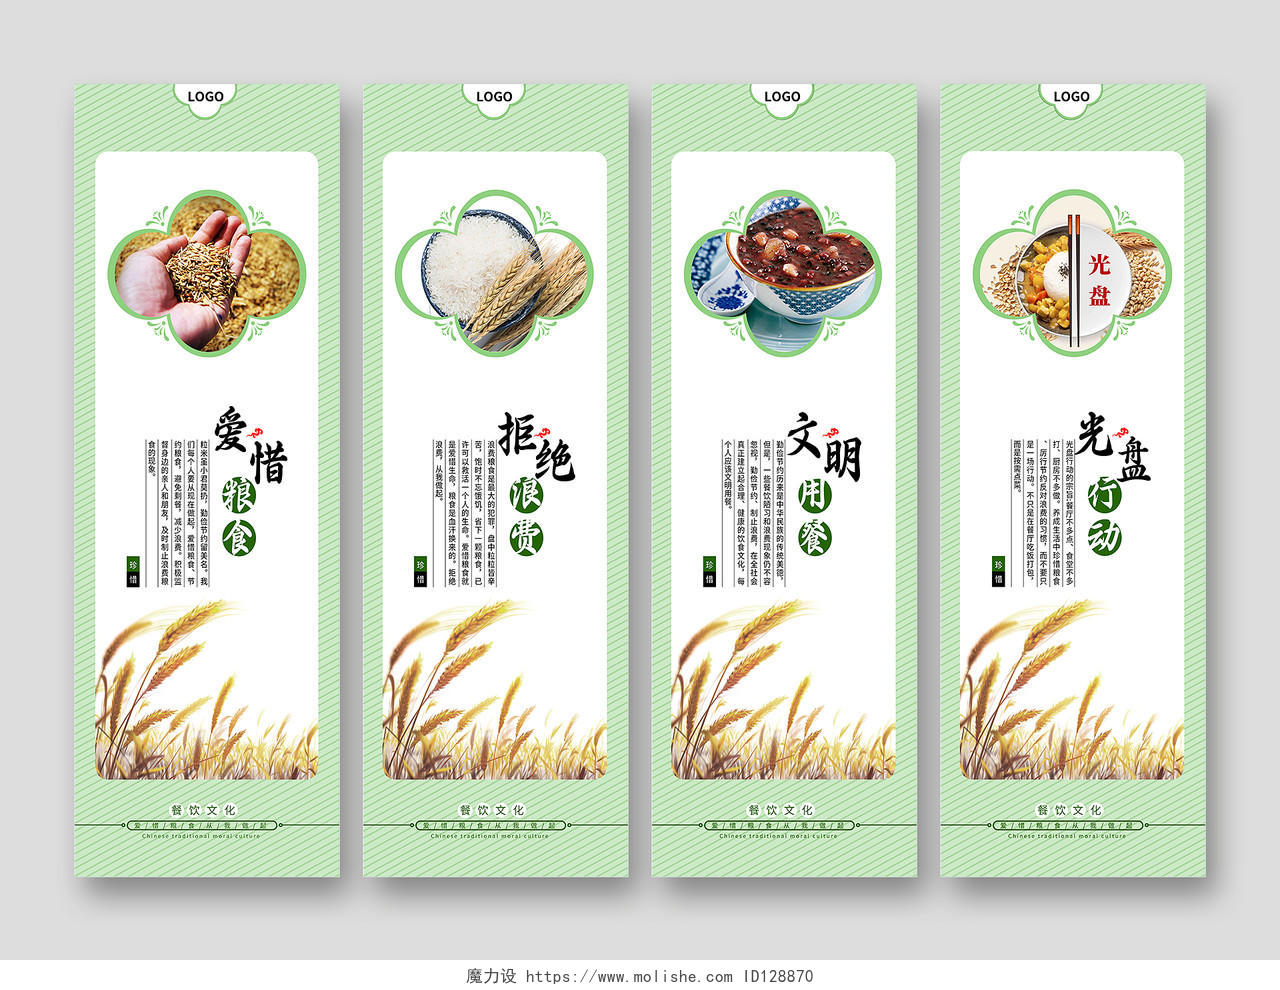 文明用餐食堂文化珍惜粮食营养均衡光盘行动宣传挂画模板